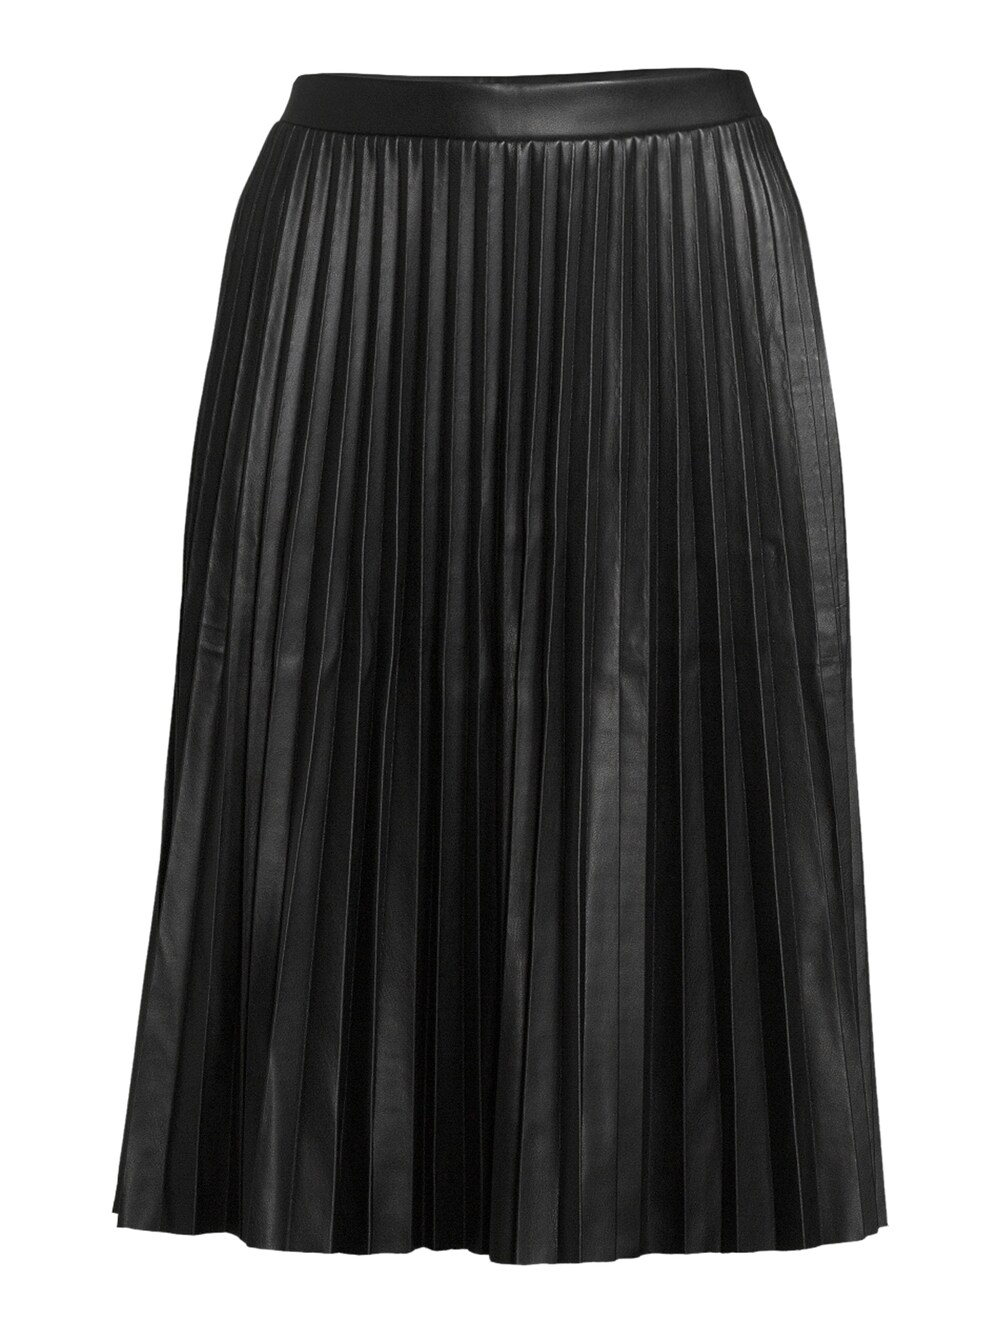 Юбка Orsay, черный юбка orsay с принтом 42 размер